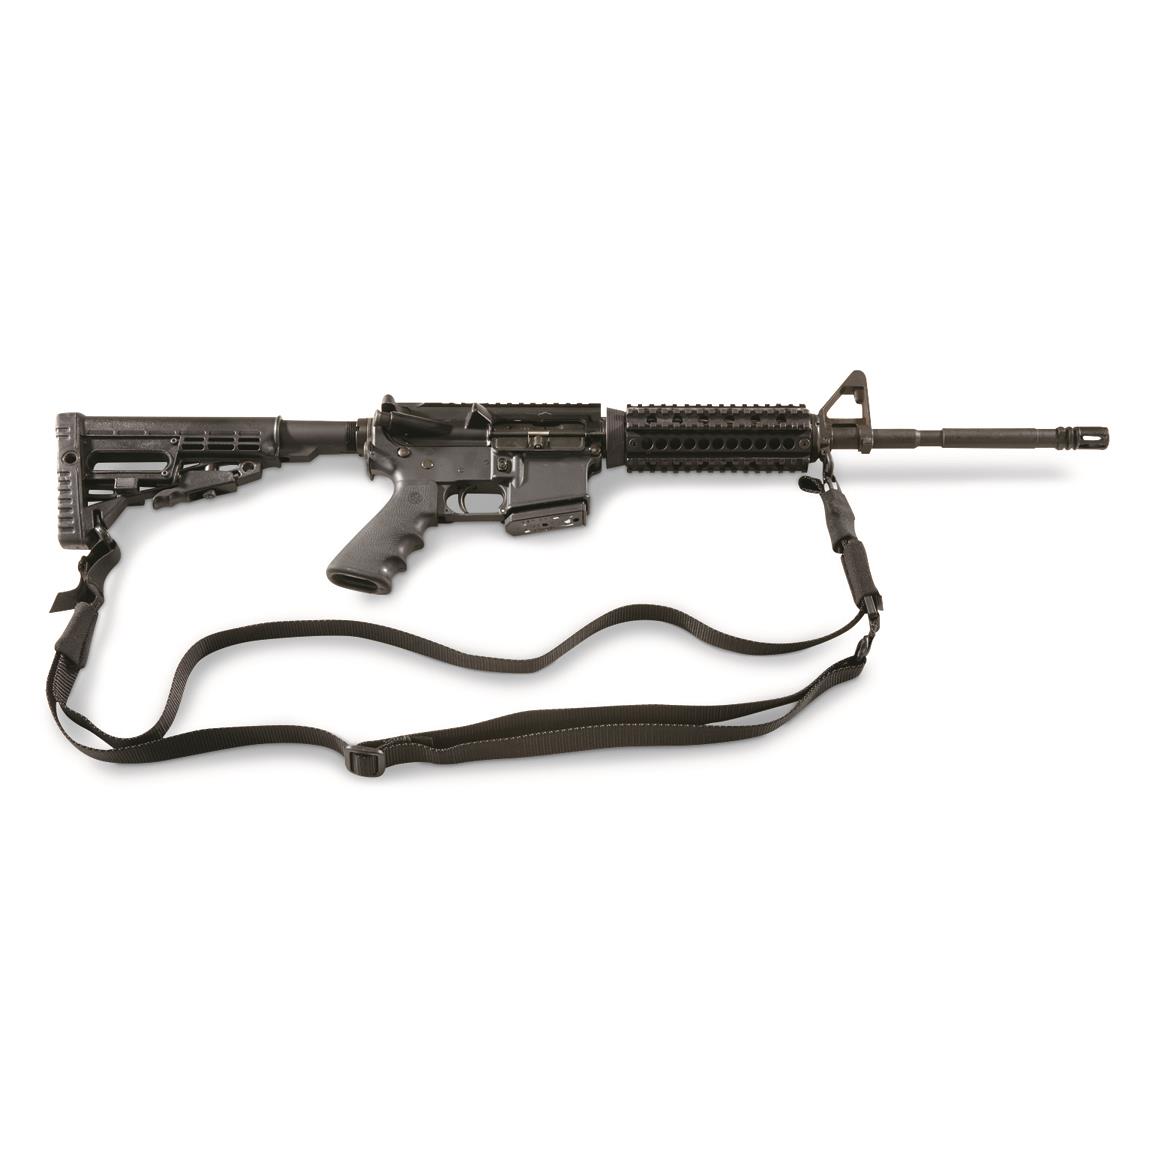 U.S. Military Surplus 3-point Adjustable Rifle Sling, New, Black